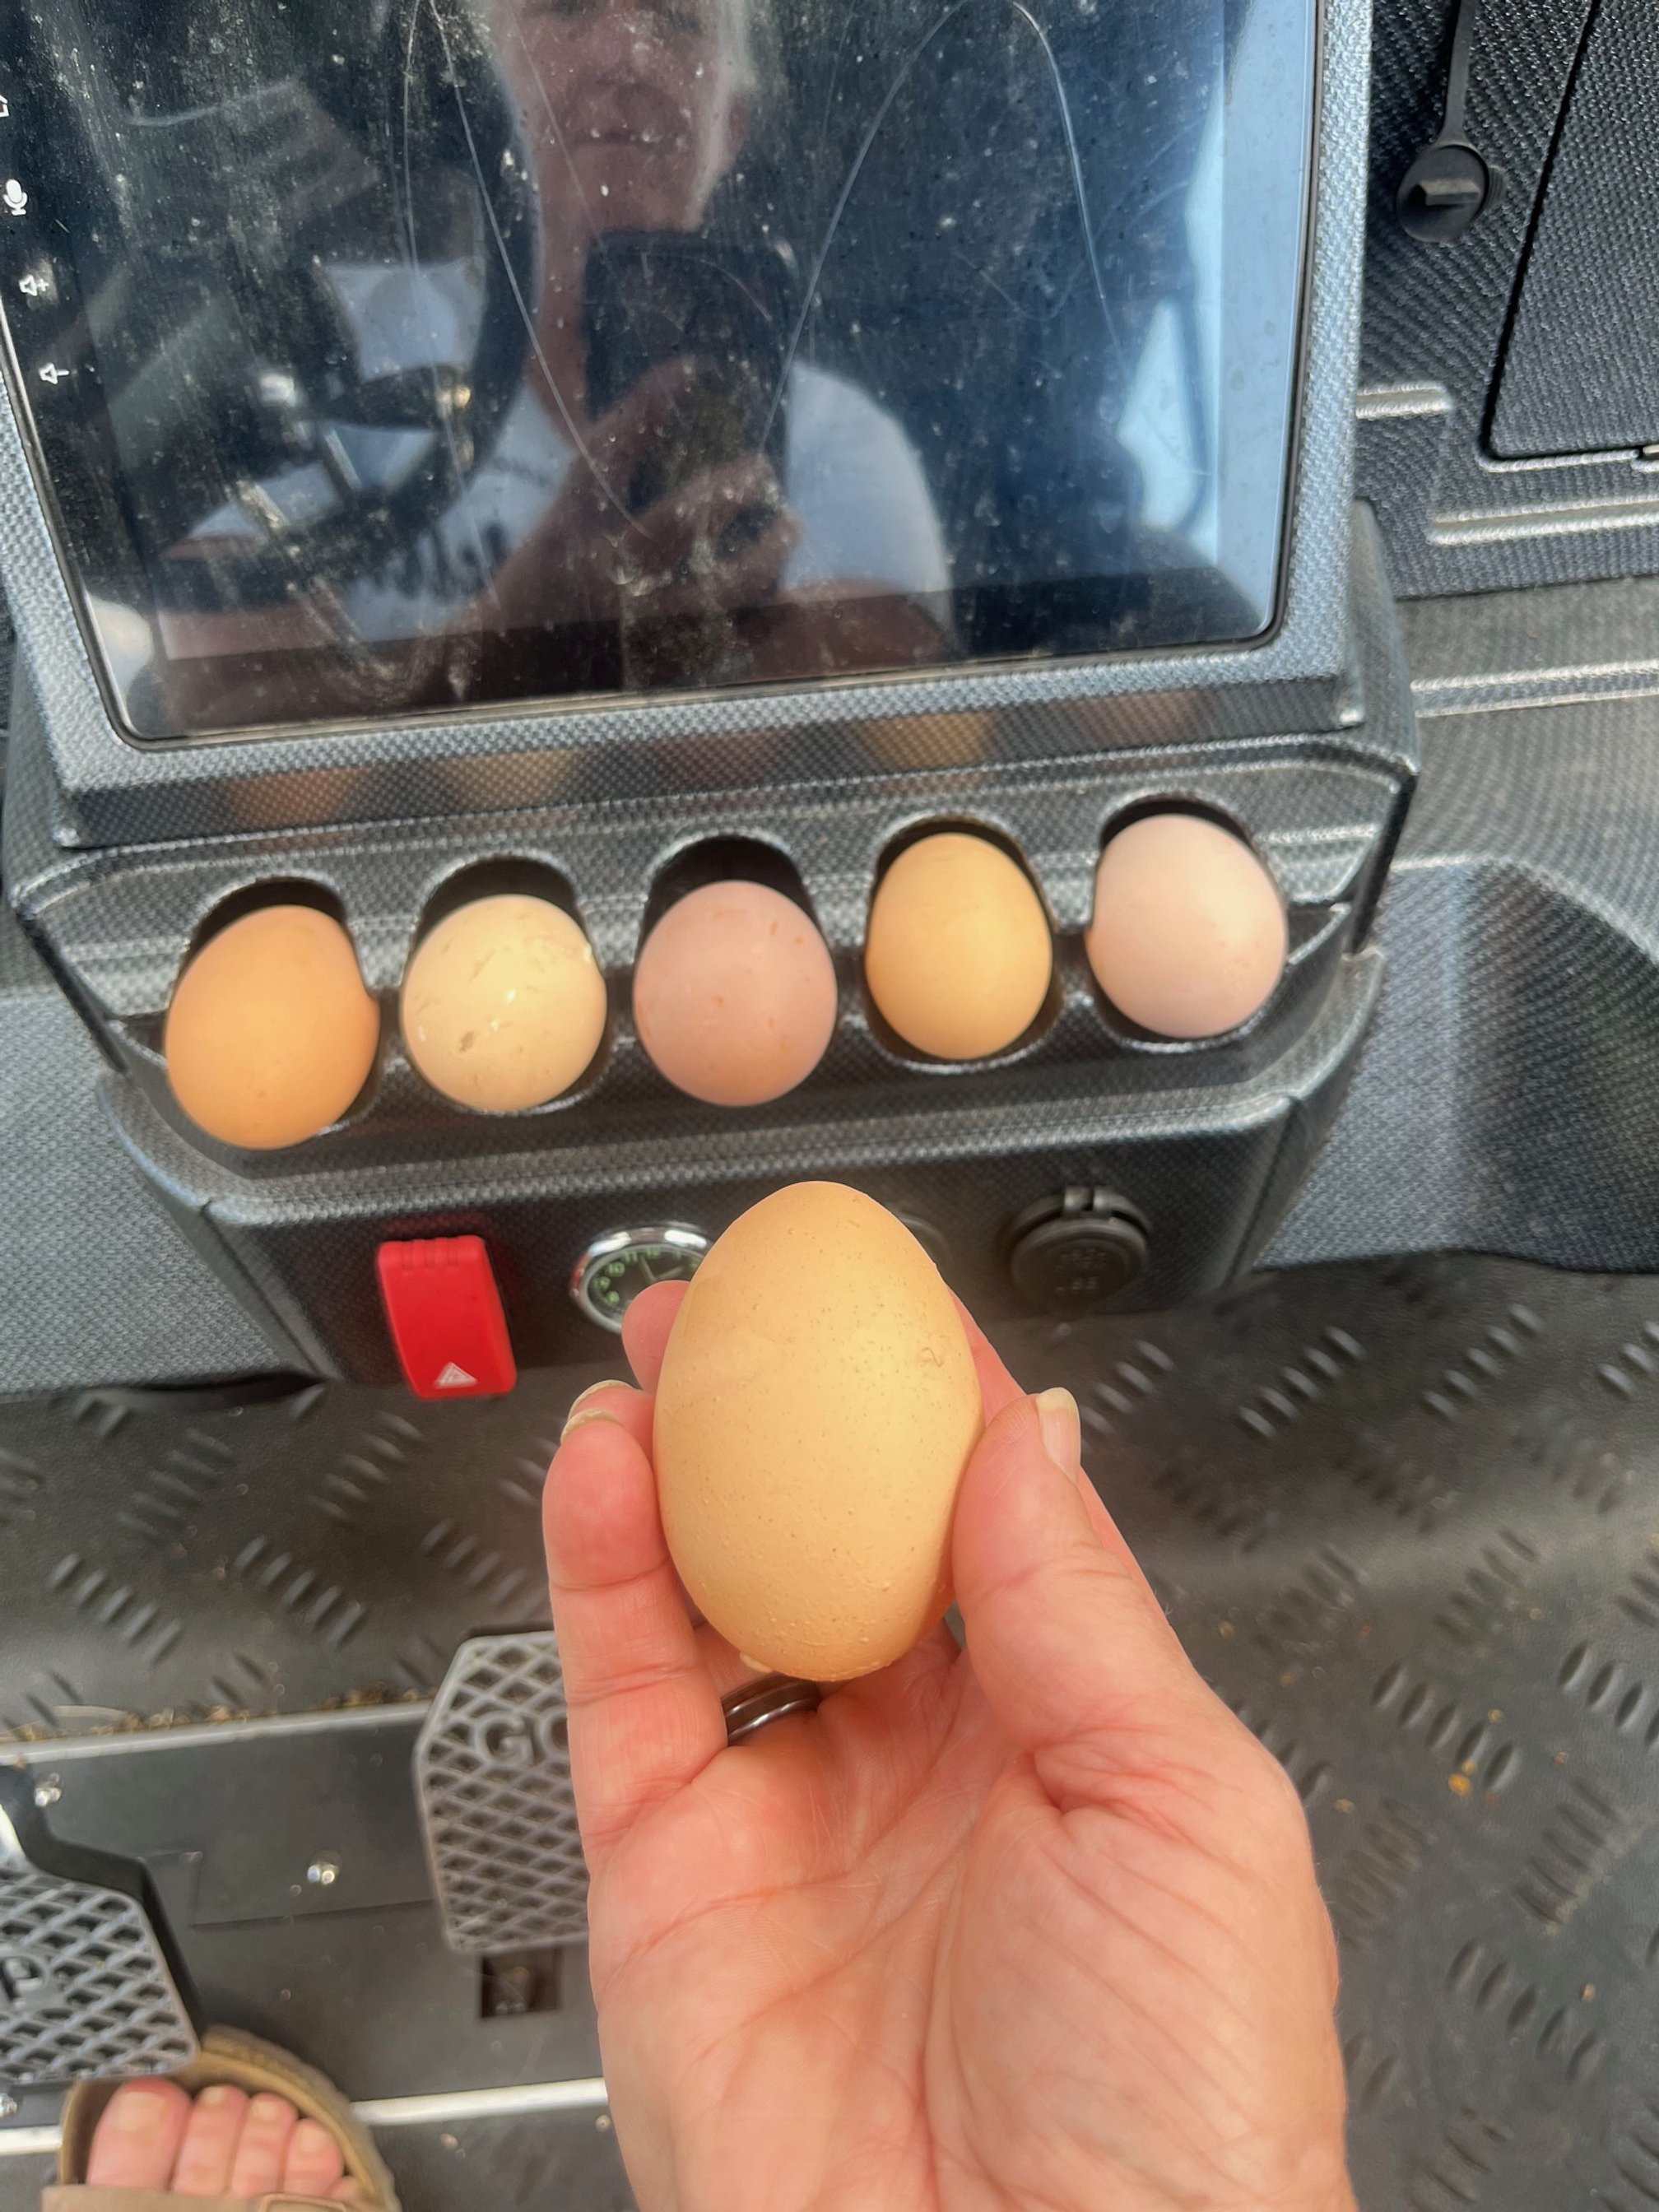 Eggs in car.jpg